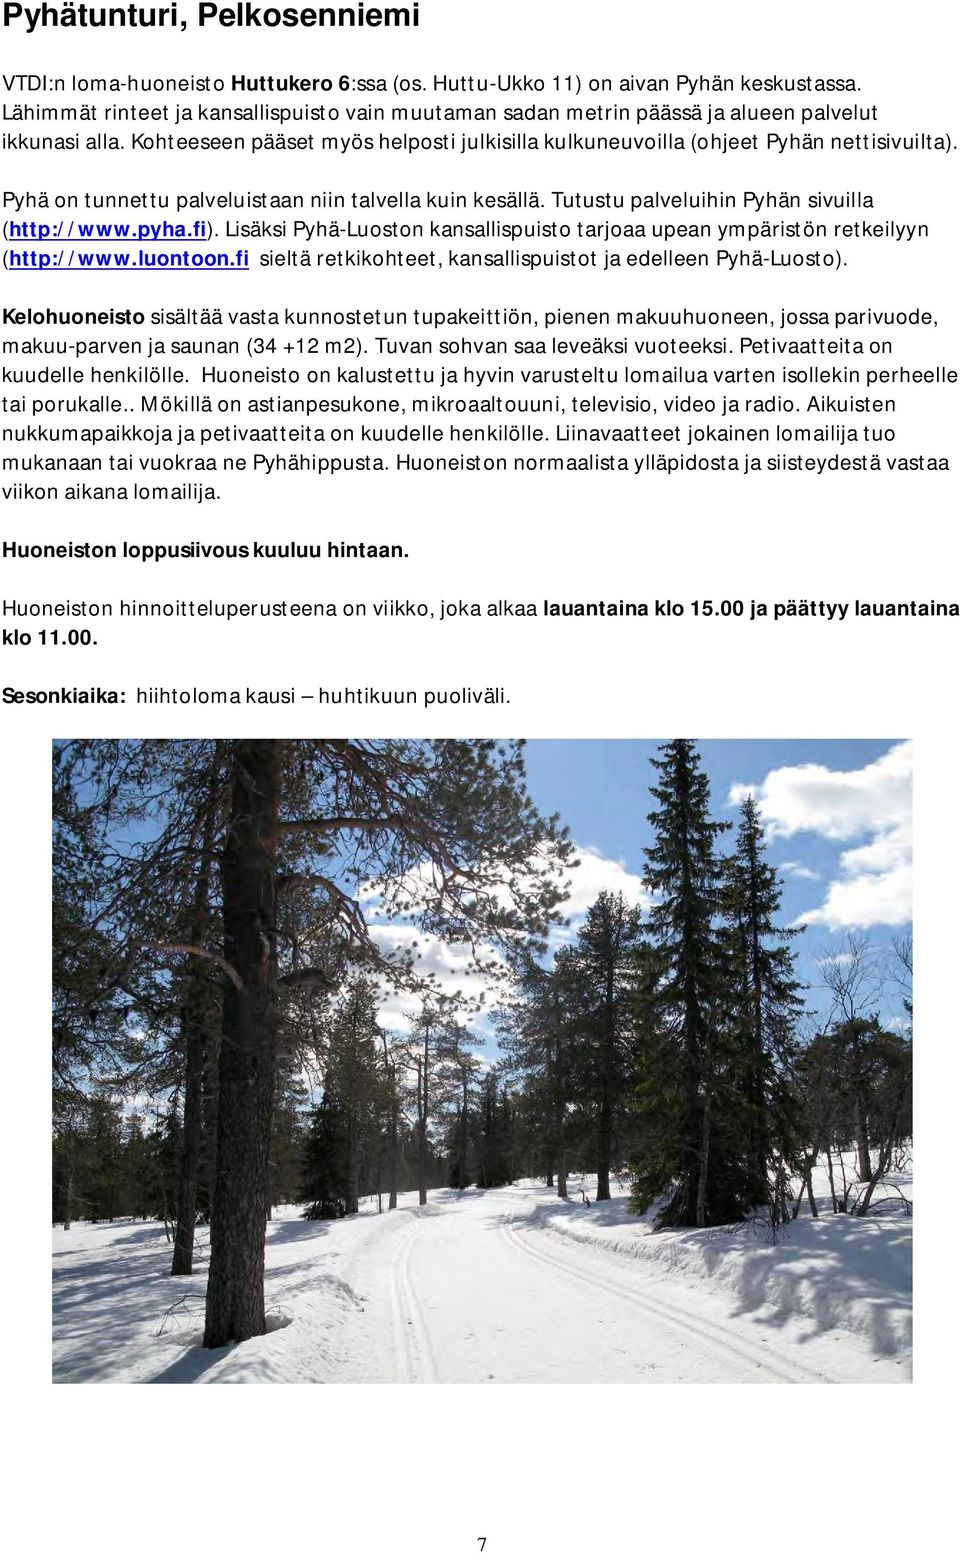 Pyhä on tunnettu palveluistaan niin talvella kuin kesällä. Tutustu palveluihin Pyhän sivuilla (http://www.pyha.fi).